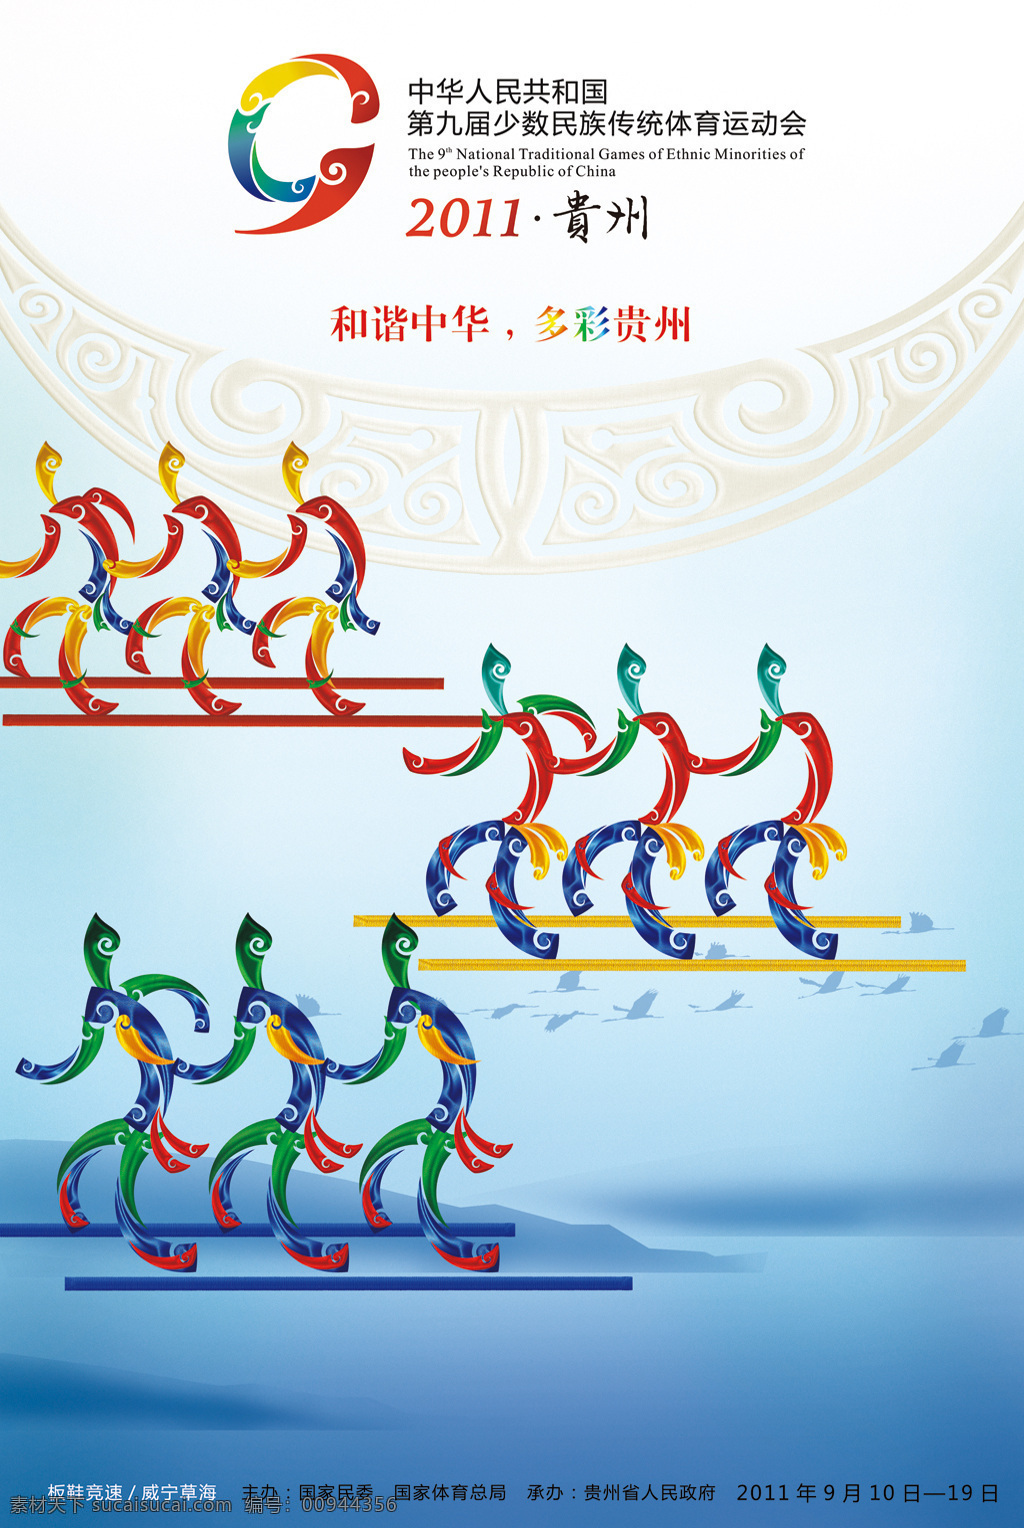 九运会海报 贵州 第九届 少数民族 运动会 海报 招贴设计